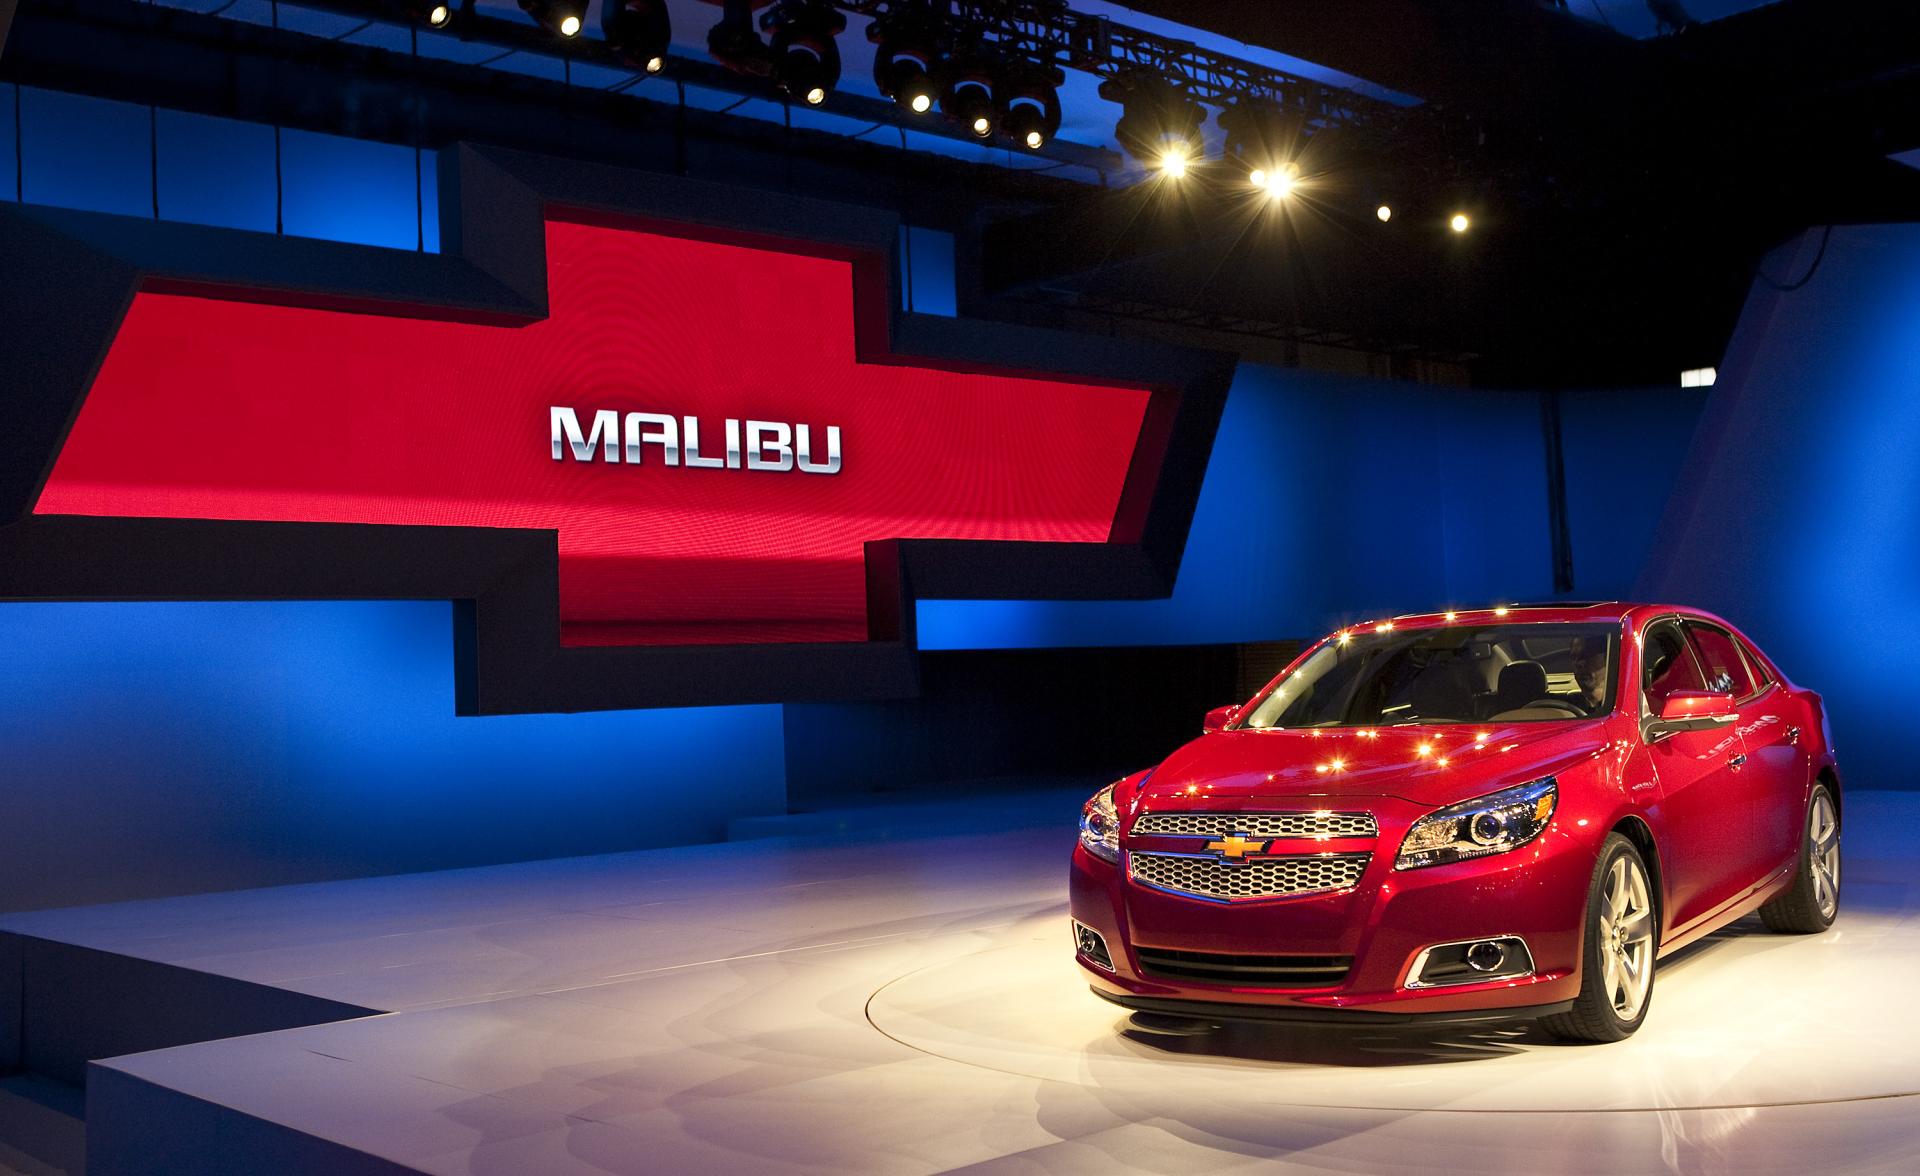 2012 Chevrolet Malibu